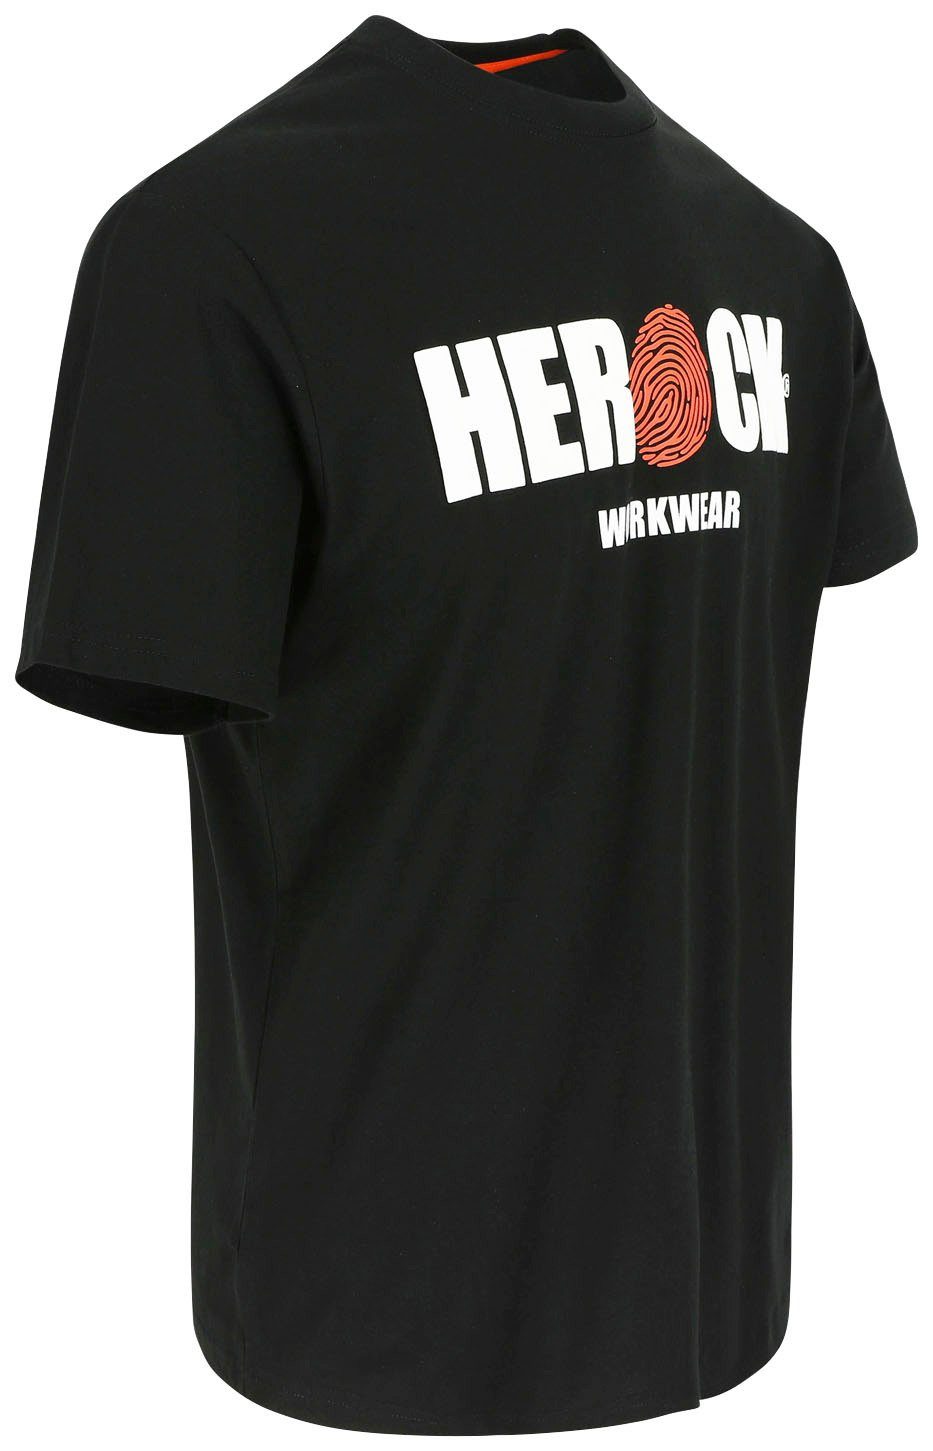 mit angenehmes T-Shirt ENI Herock Baumwolle, Rundhals, schwarz Herock®-Aufdruck, Tragegefühl